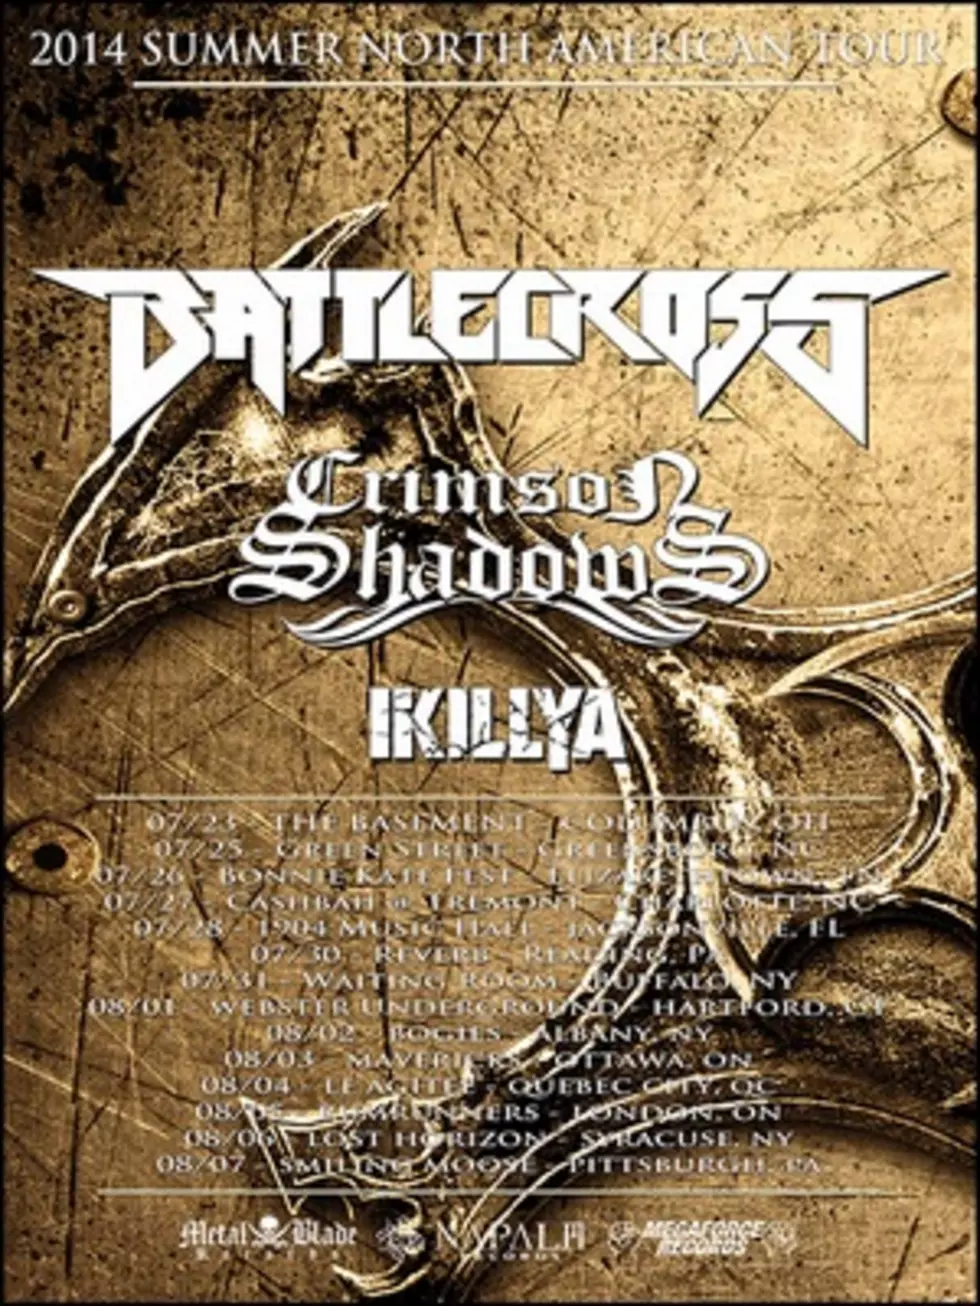 Battlecross Plot Summer Tour, Plan New Album